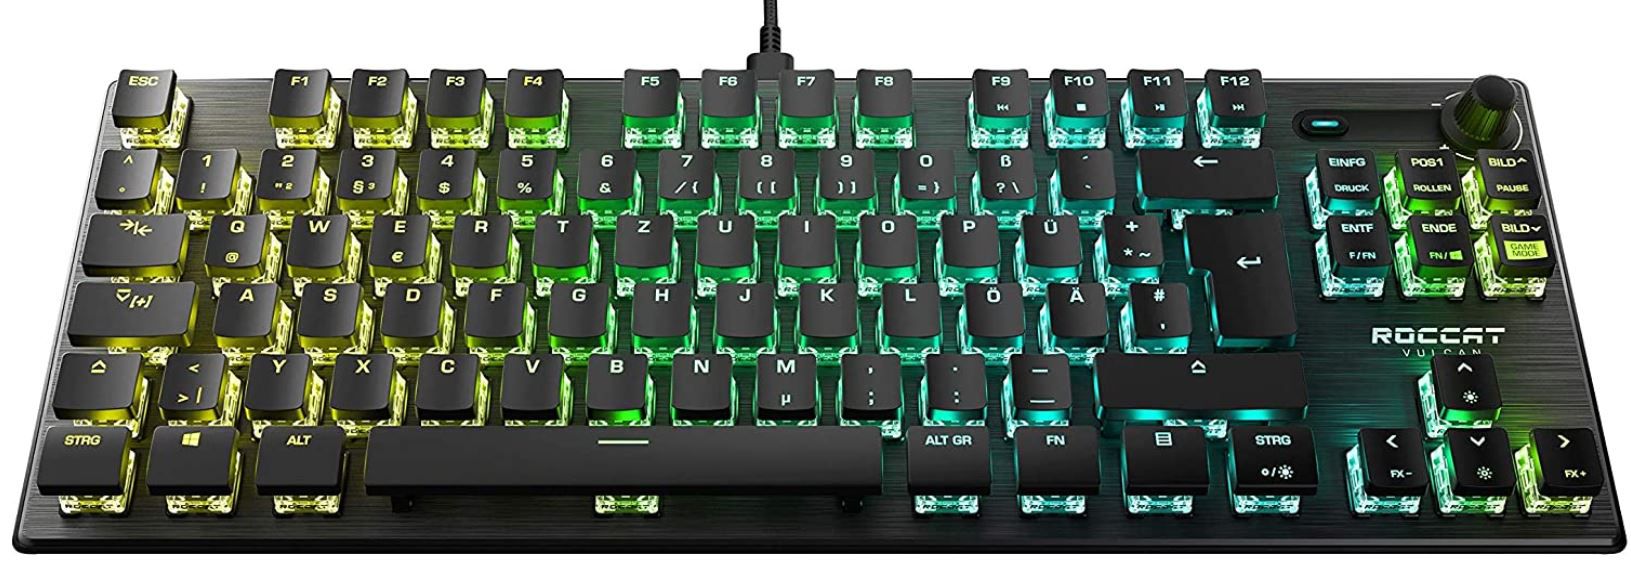 ROCCAT Vulcan TKL Pro mechanische RGB Gaming Tastatur für 109,99€ (statt 148€)